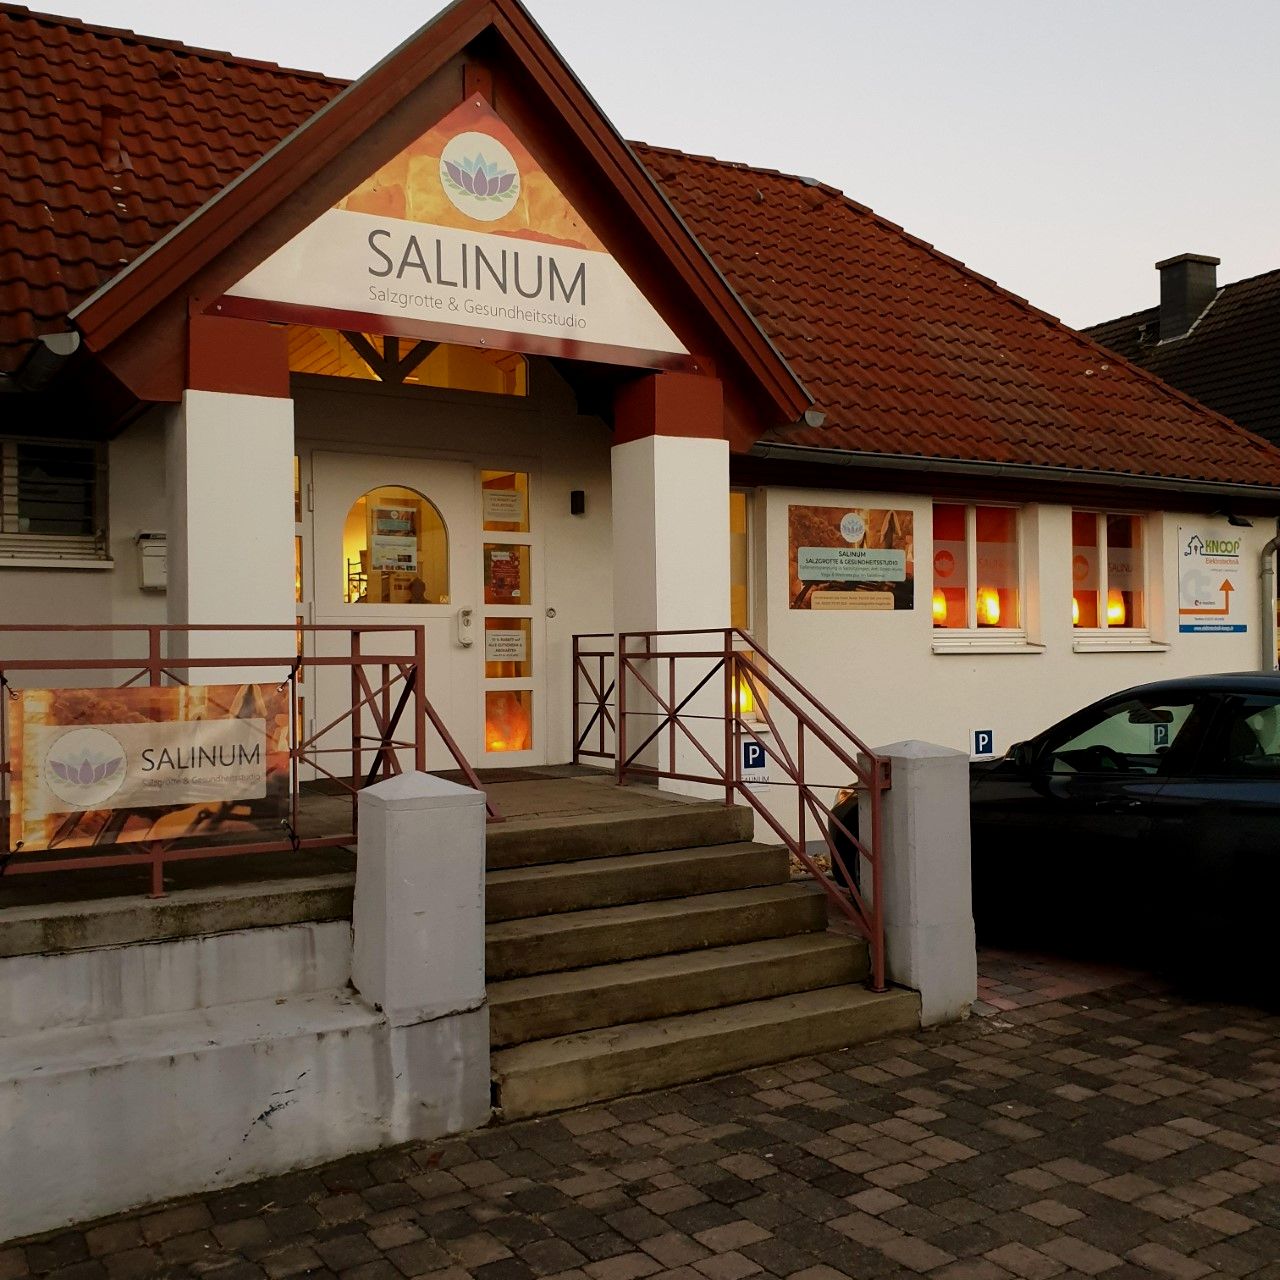 SALINUM Salzgrotte & Gesundheitsstudio